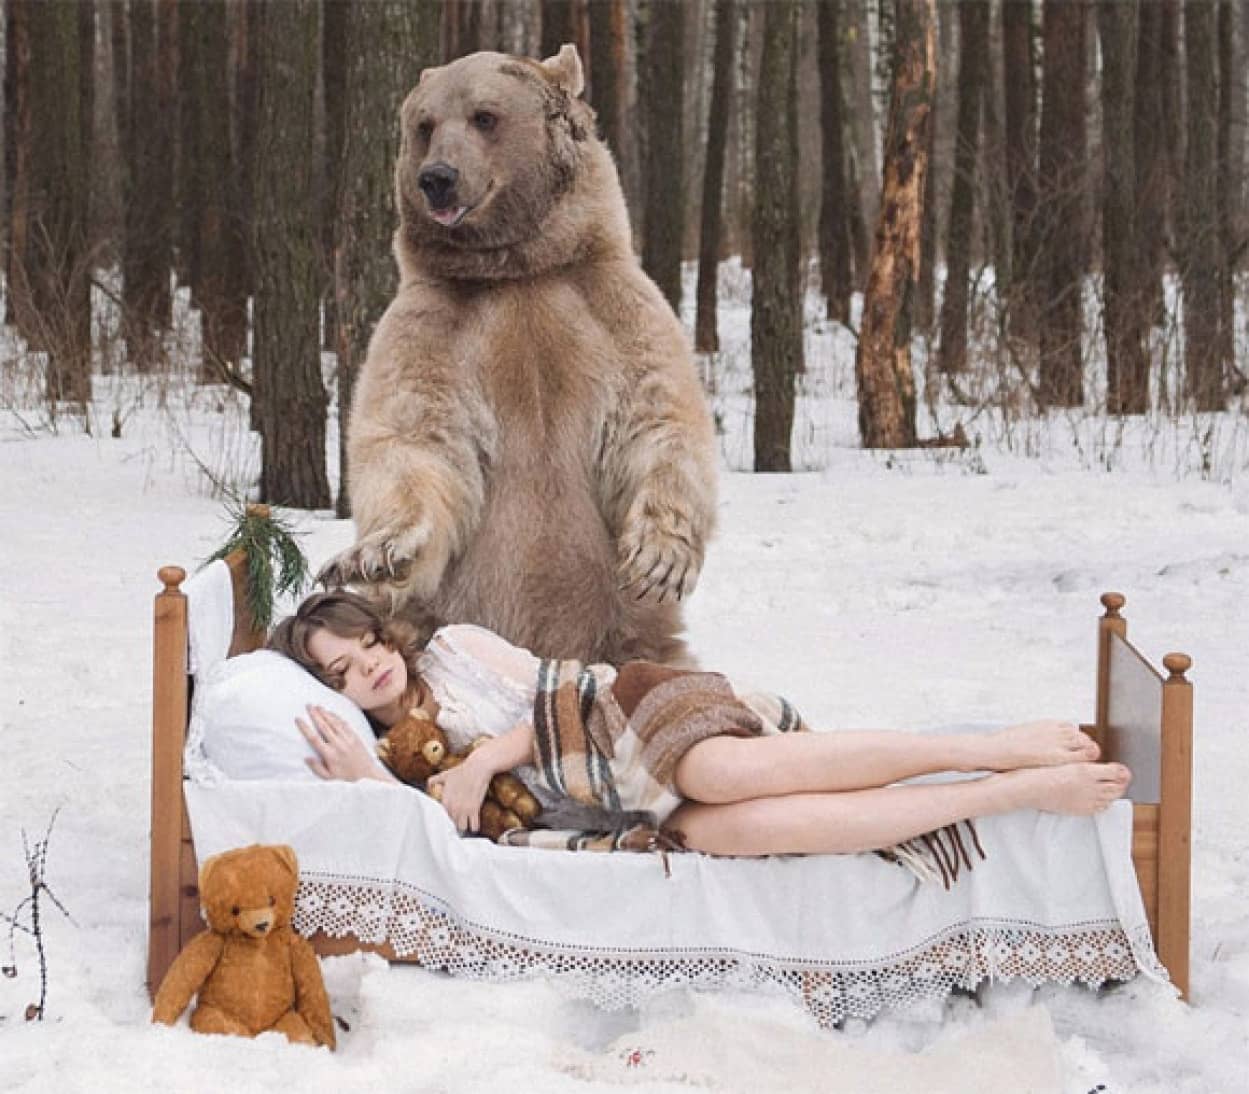 本物の巨大クマと2人の美女がロシアの森で寄り添いあいながら魅惑のポーズ 狩猟反対キャンペーン ニコニコニュース